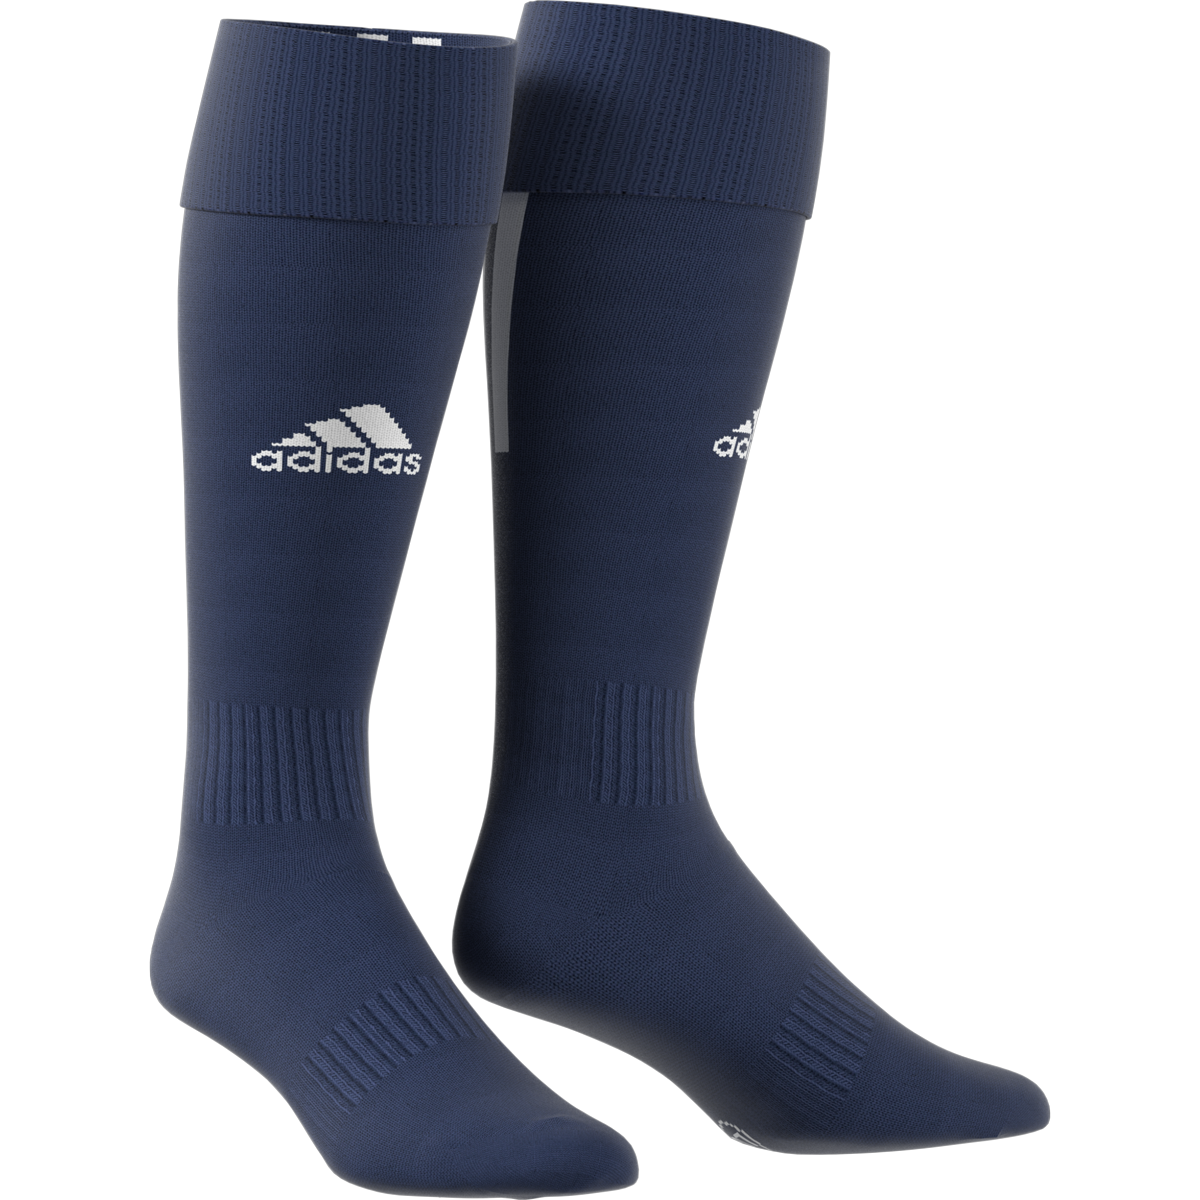 Adidas Santos 18 tmavě modrá/bílá EU 40/42